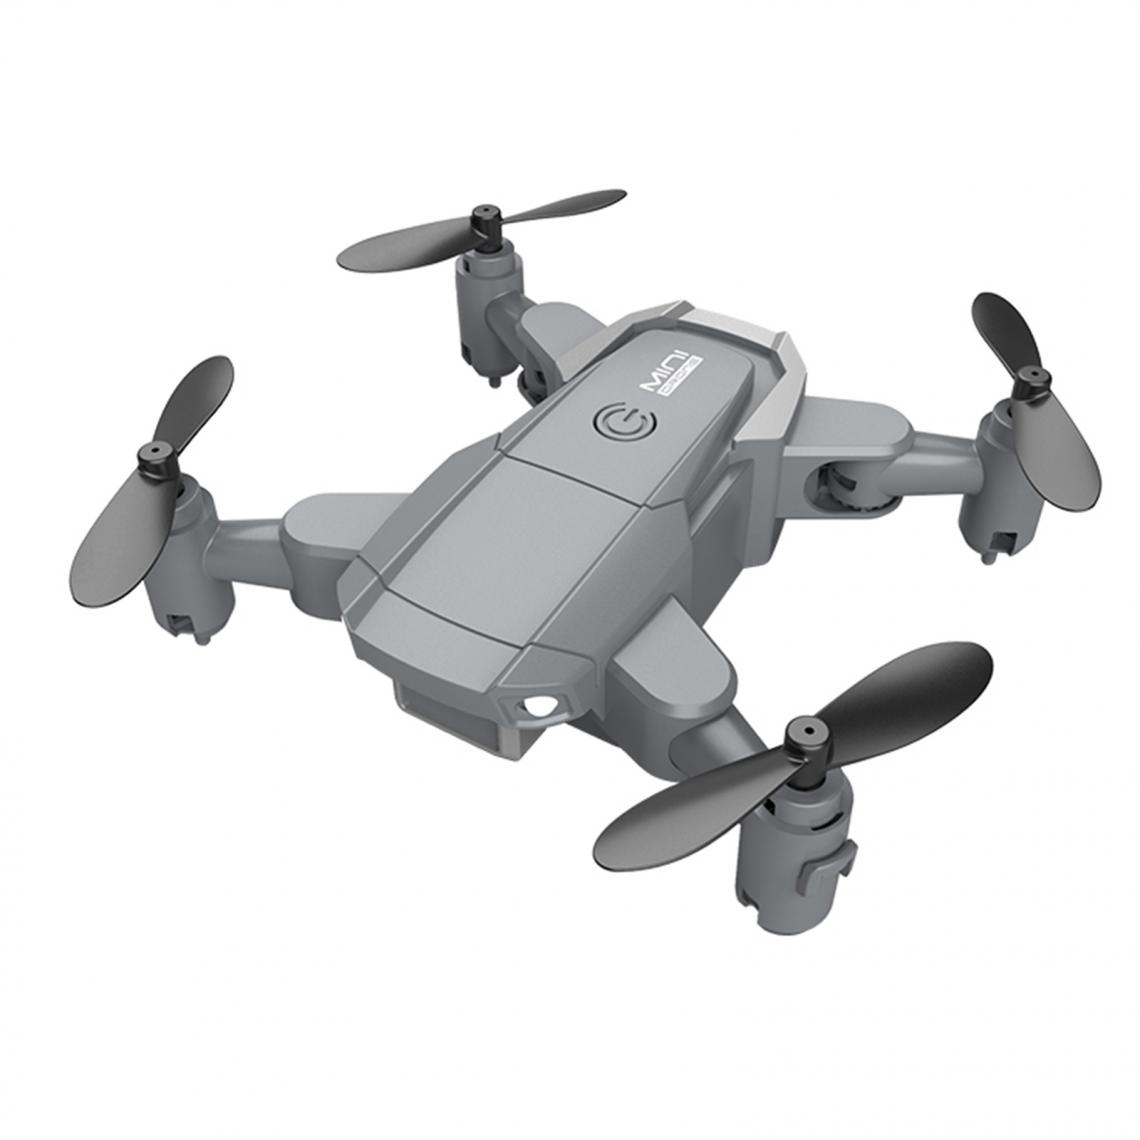 marque generique - KY905 Mini Drone 4K / 1080P Caméra Quadricoptère RC Pliable 4k Batterie Simple - Caméras Sportives